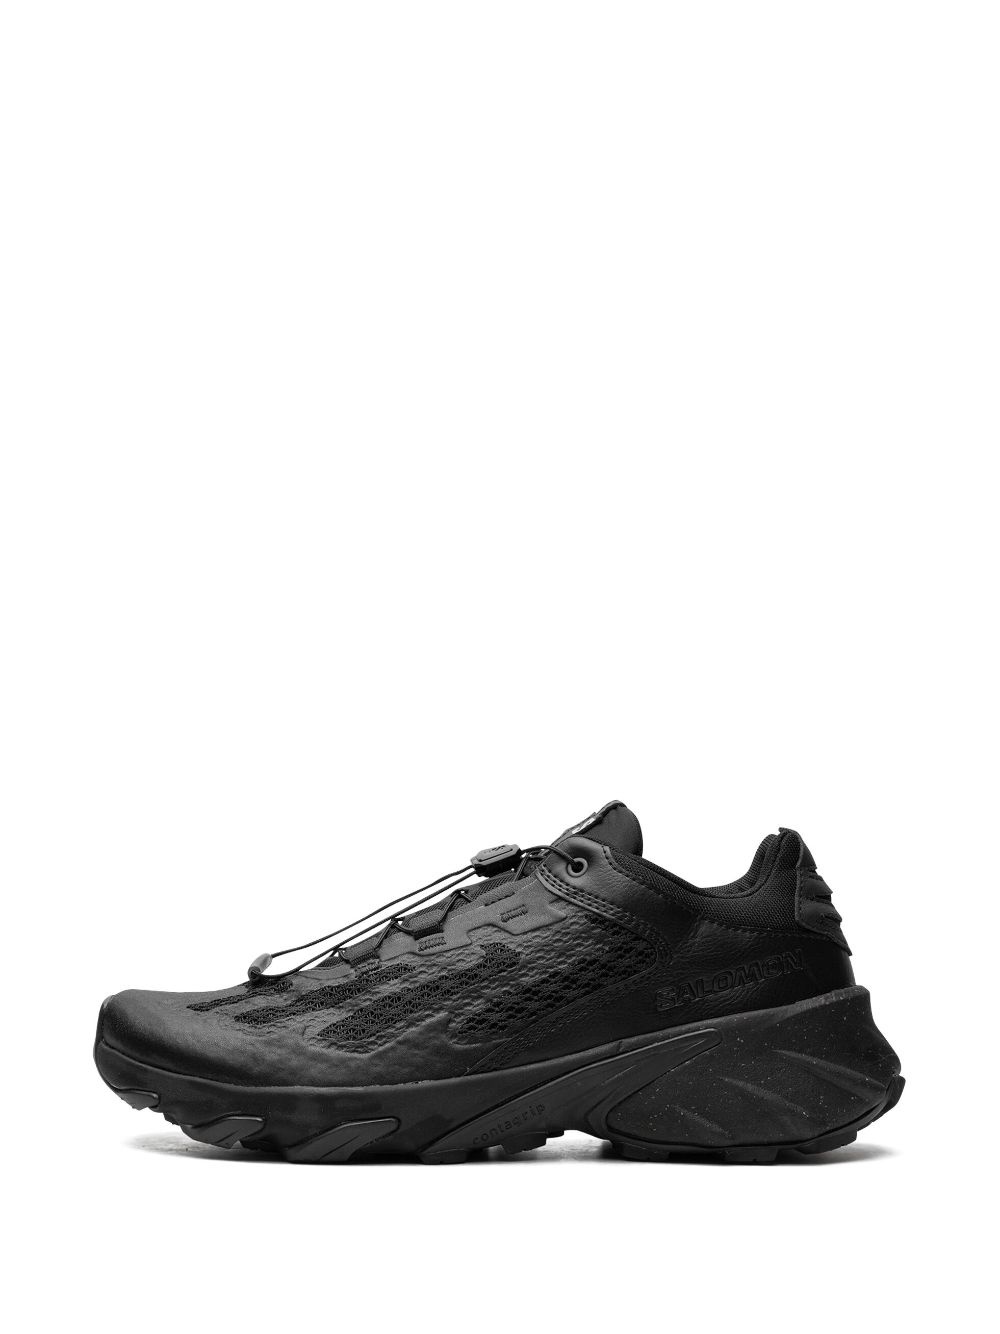 Speedverse PRG "Black" sneakers - 5